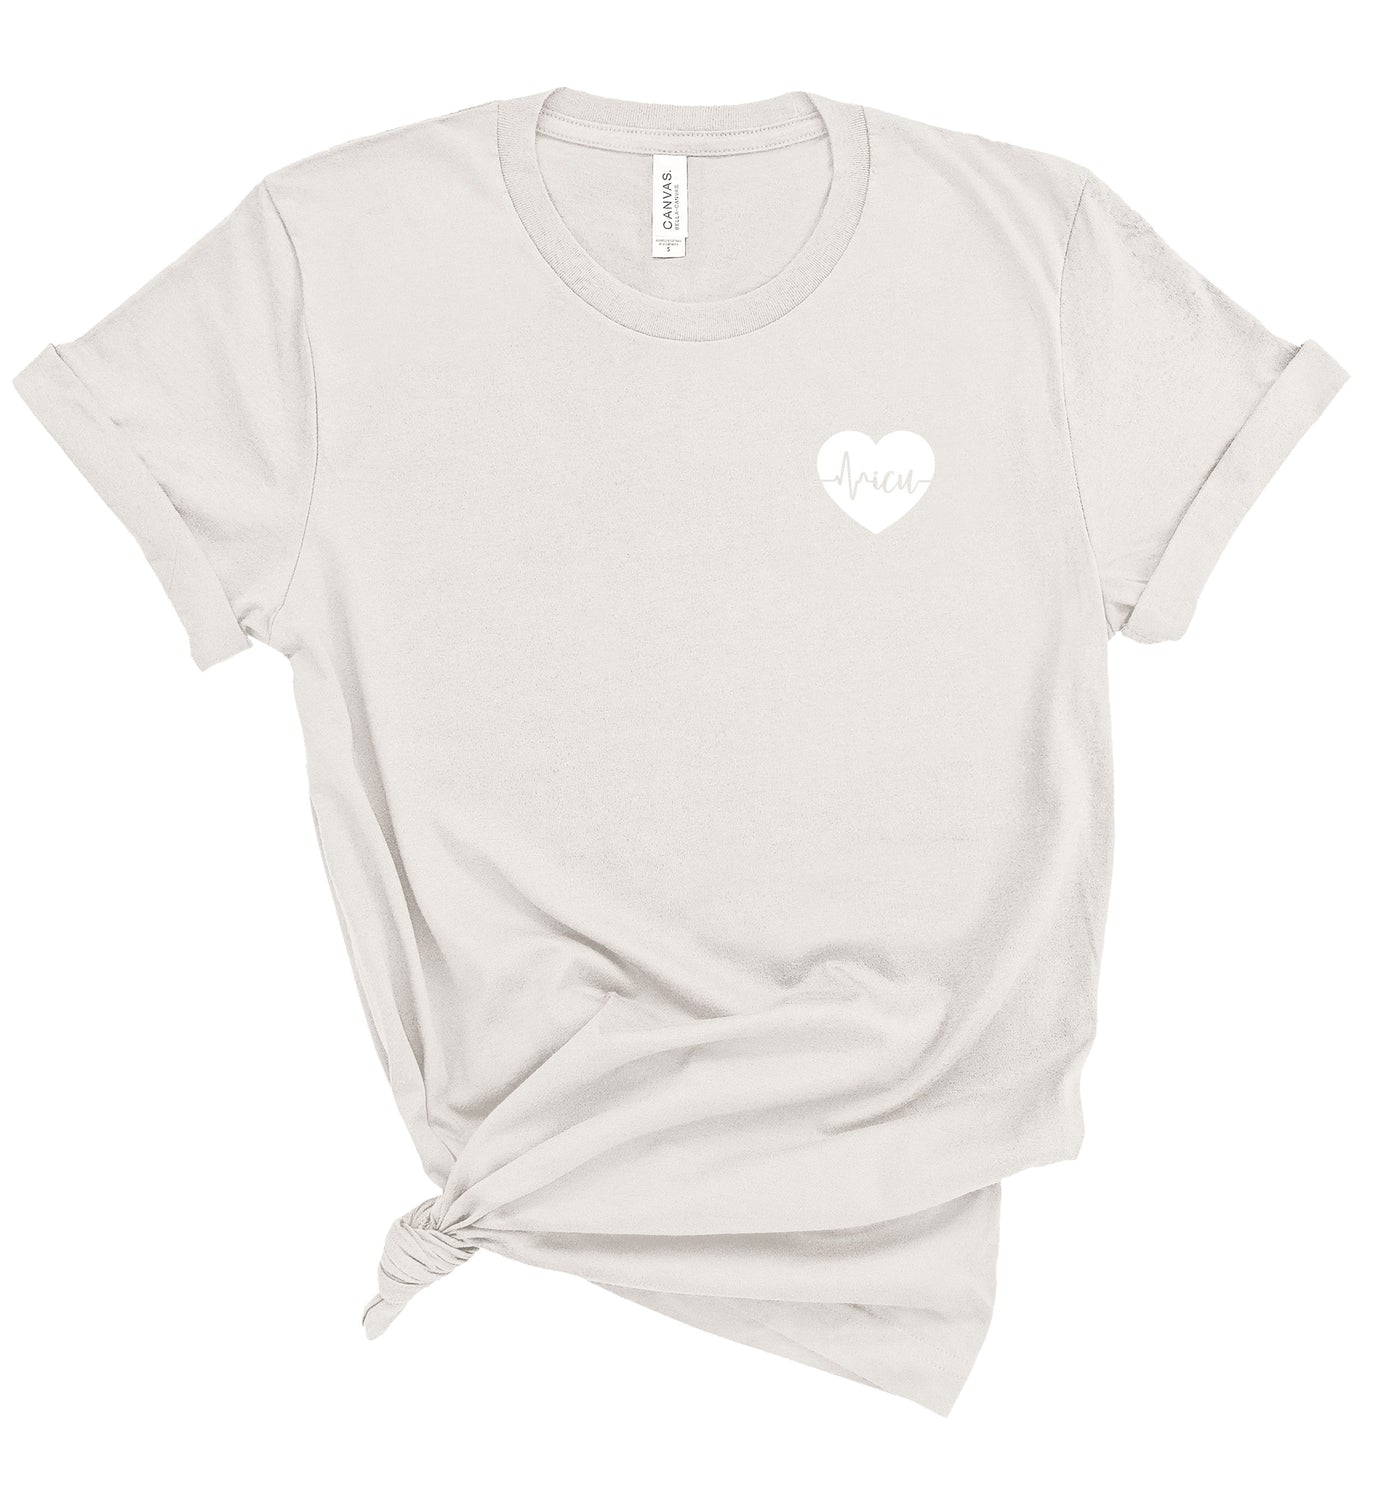 ICU ECG Heart - Shirt